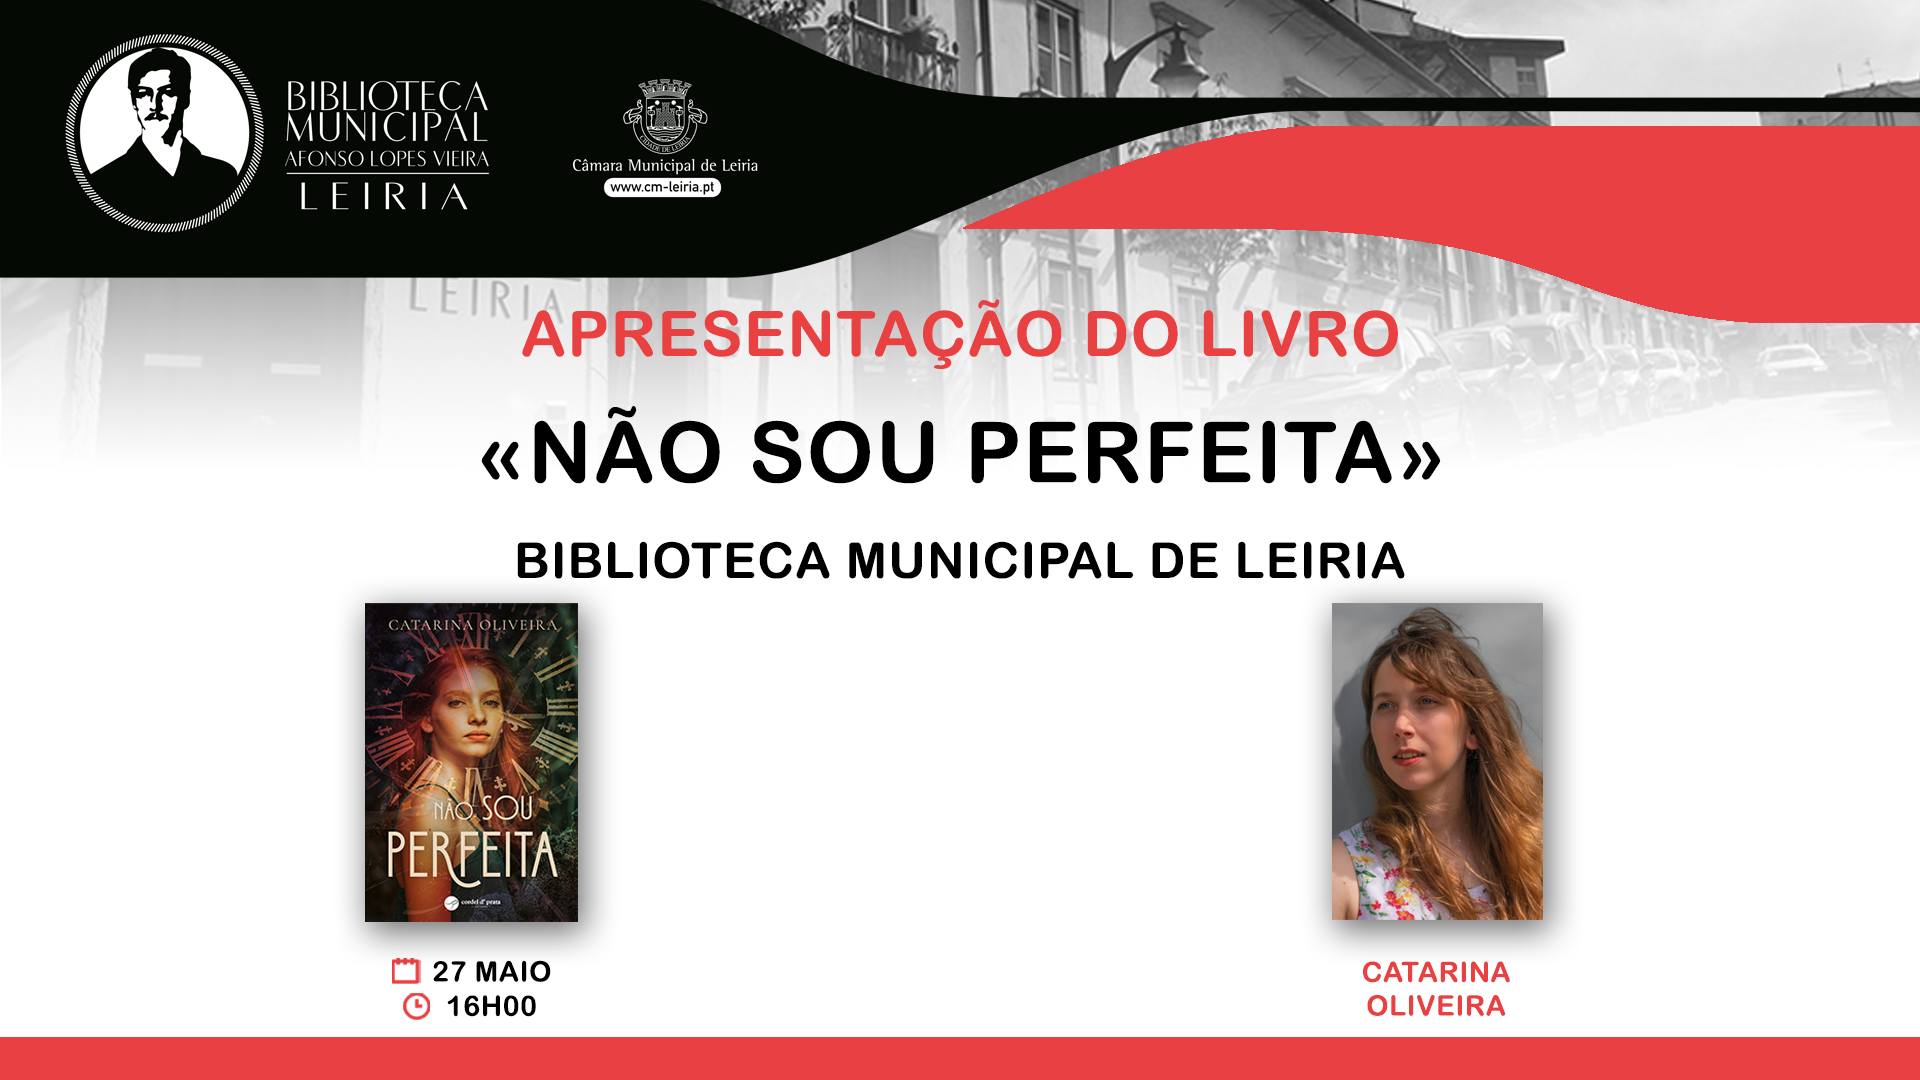 Apresentação do livro «Não sou perfeita» de Catarina Oliveira